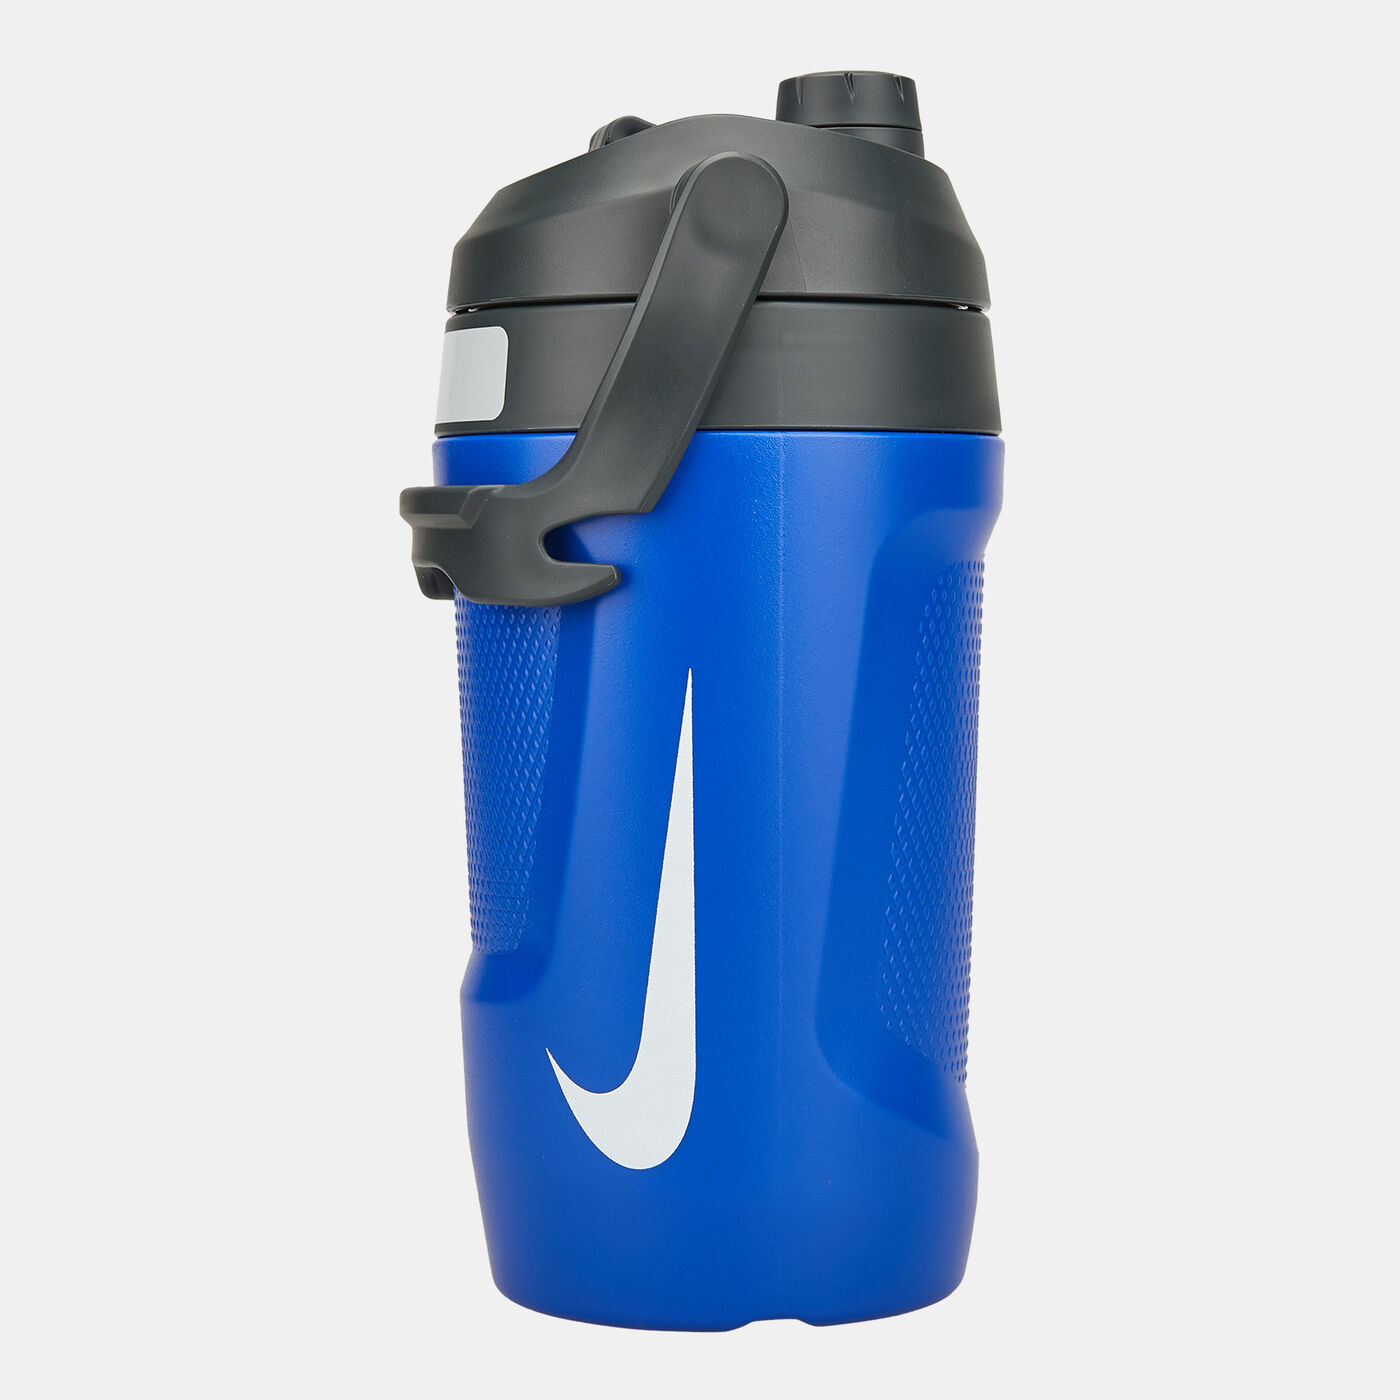 Fuel Jug Water Bottle - 64 oz